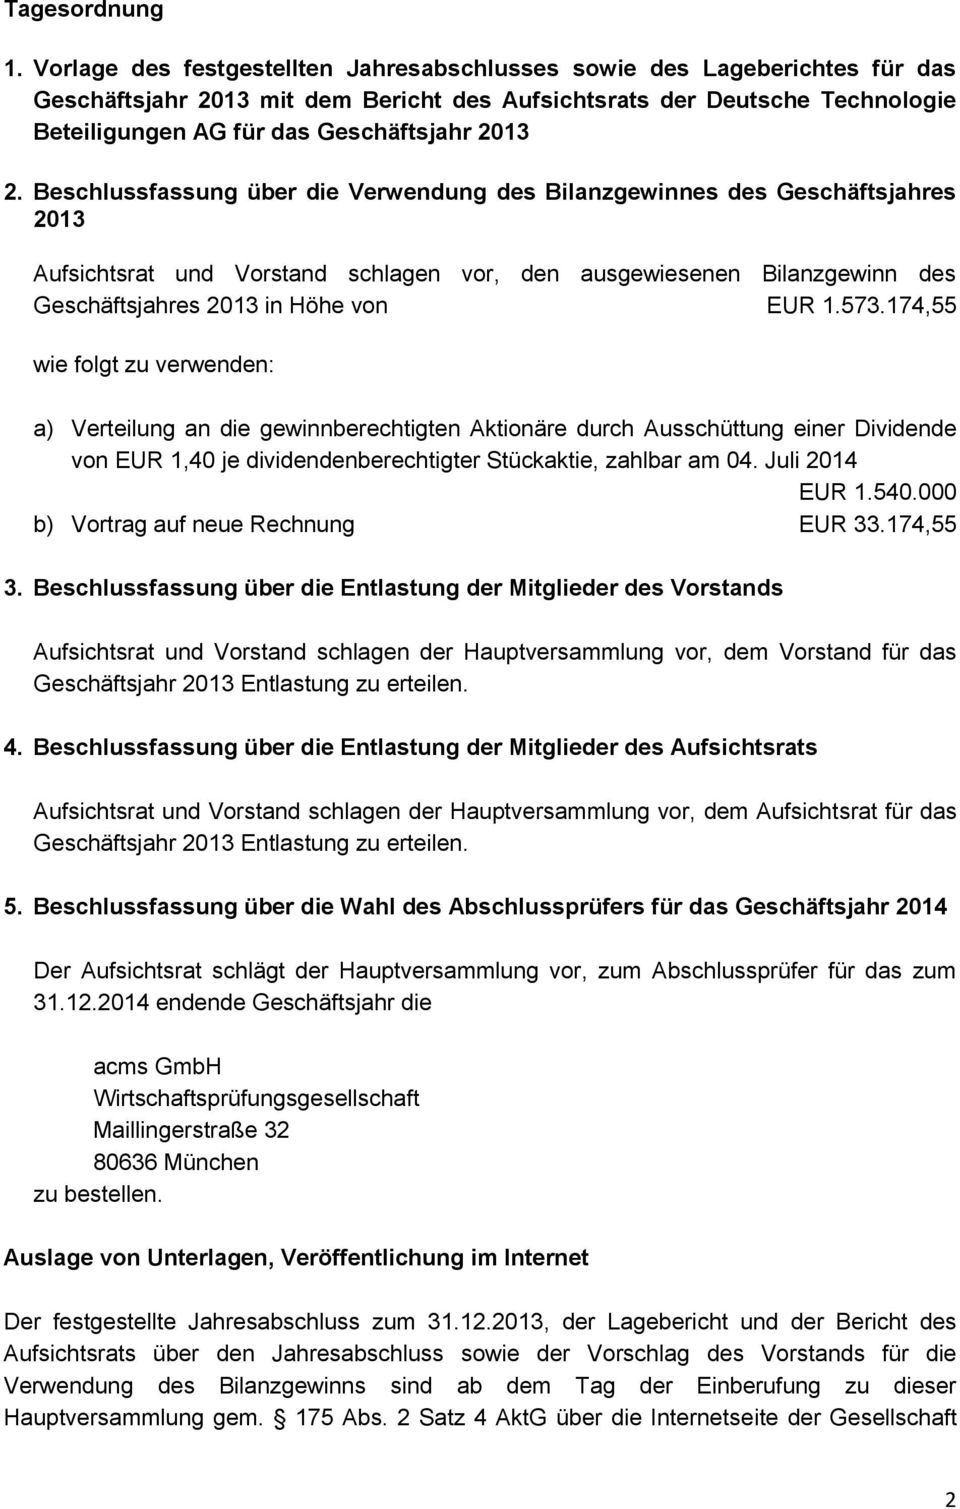 2. Beschlussfassung über die Verwendung des Bilanzgewinnes des Geschäftsjahres 2013 Aufsichtsrat und Vorstand schlagen vor, den ausgewiesenen Bilanzgewinn des Geschäftsjahres 2013 in Höhe von EUR 1.